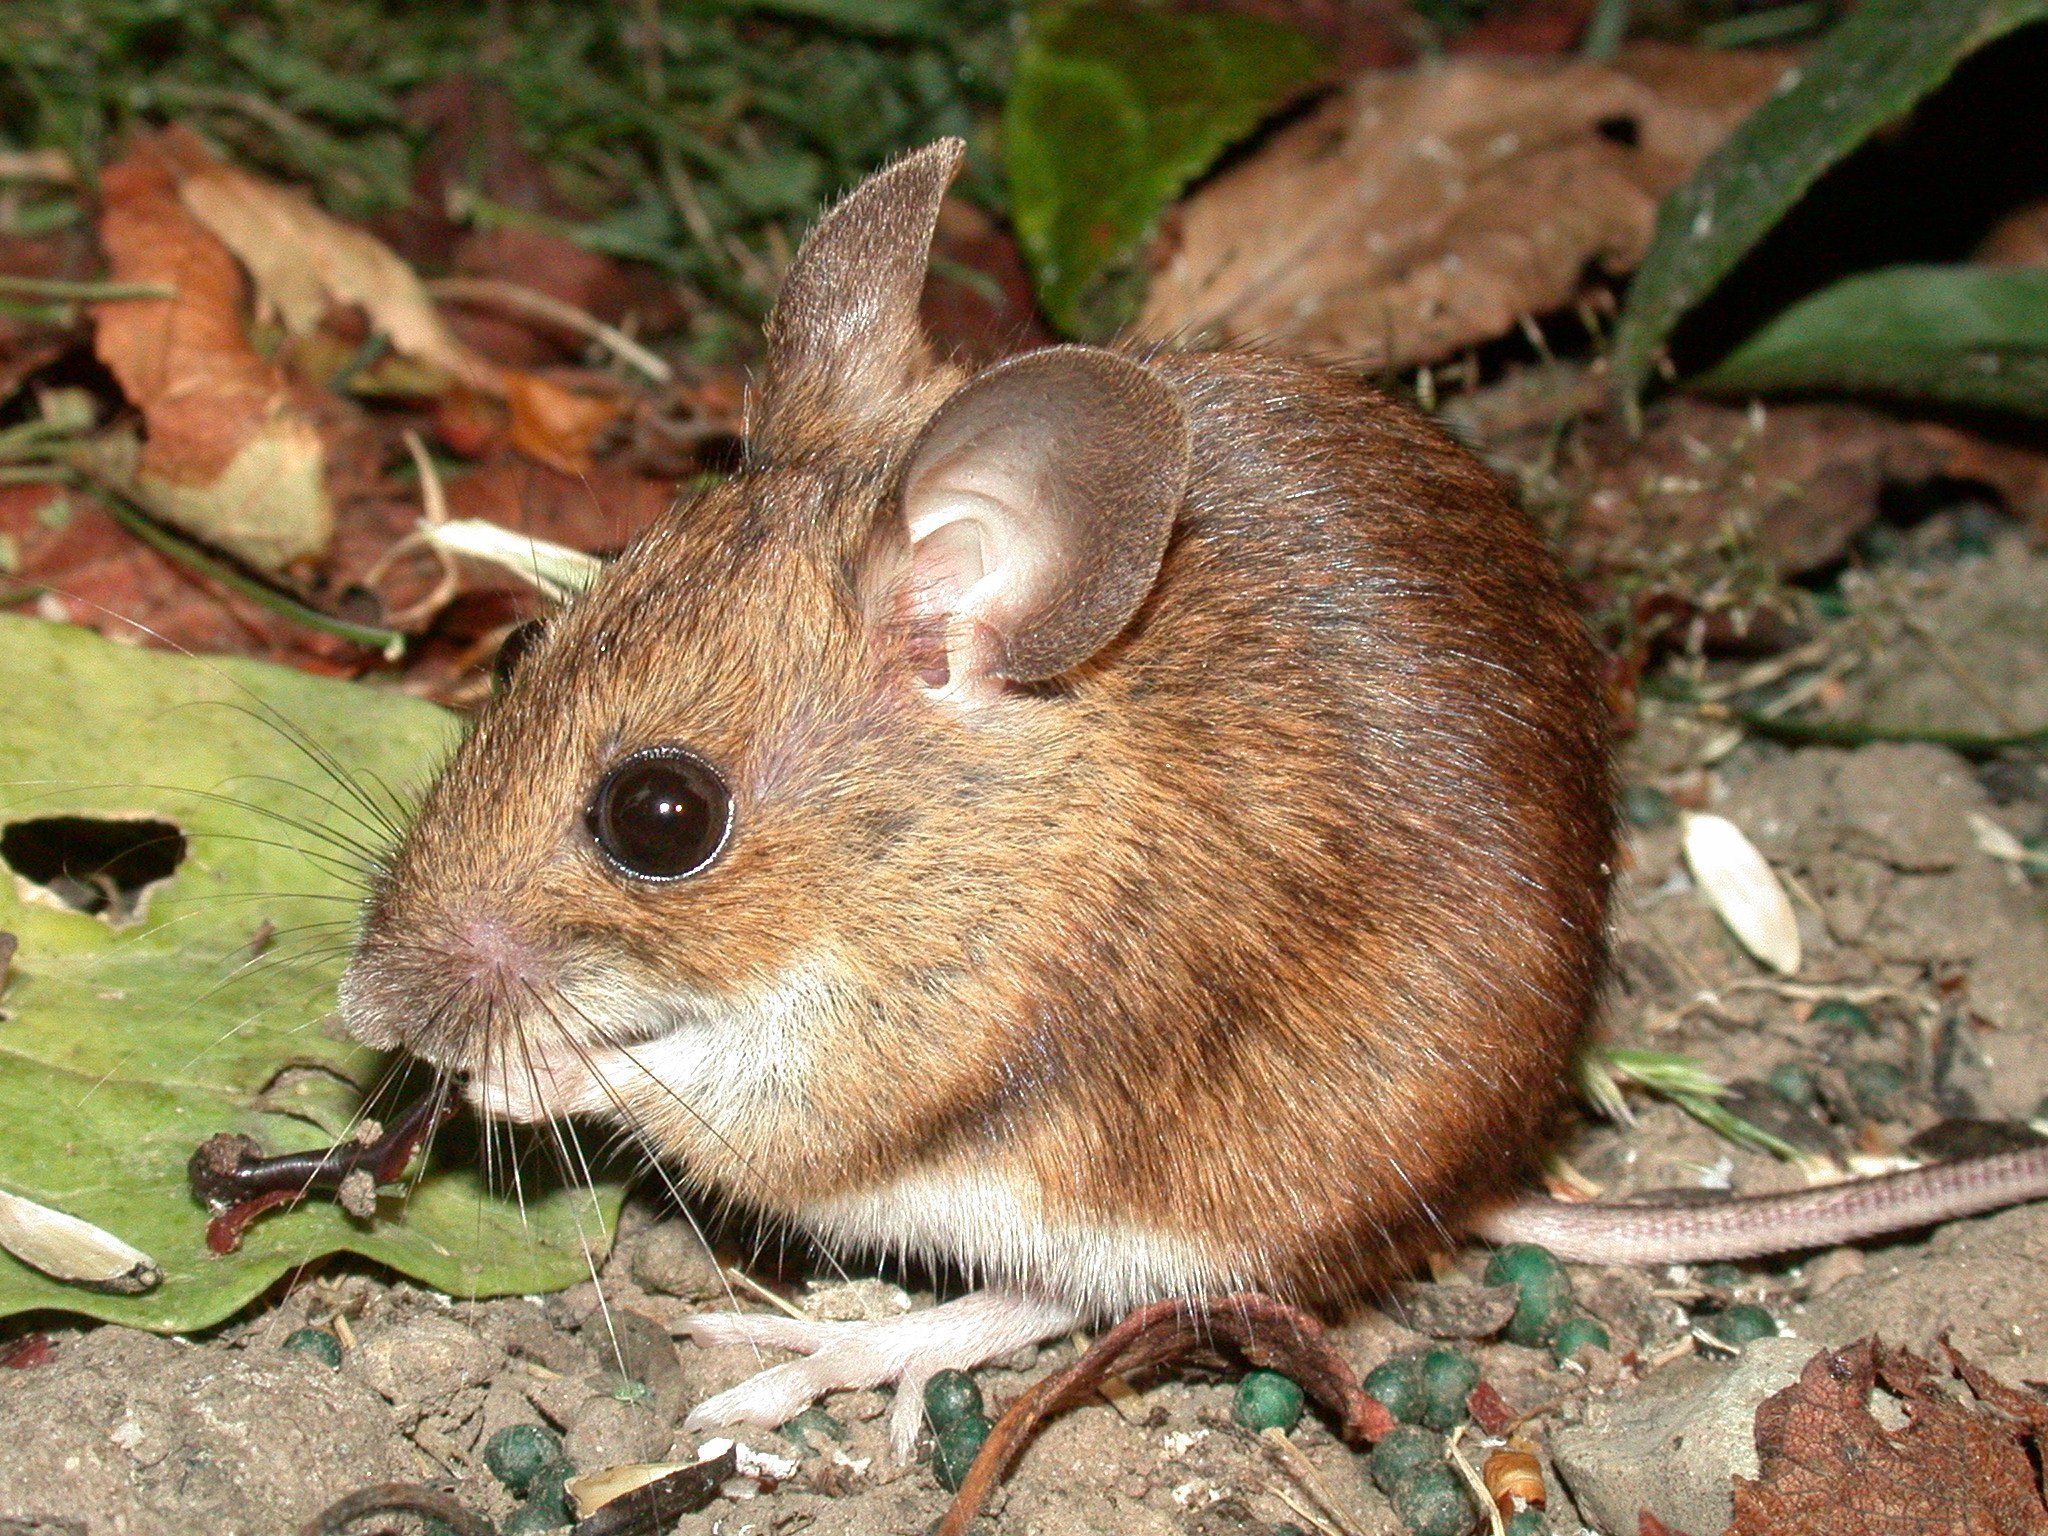 Лесная мышь животное. Желтогорлая мышь. Восточноазиатская мышь Apodemus peninsulae Thomas, 1907. Apodemus uralensis. Лесная мышь.